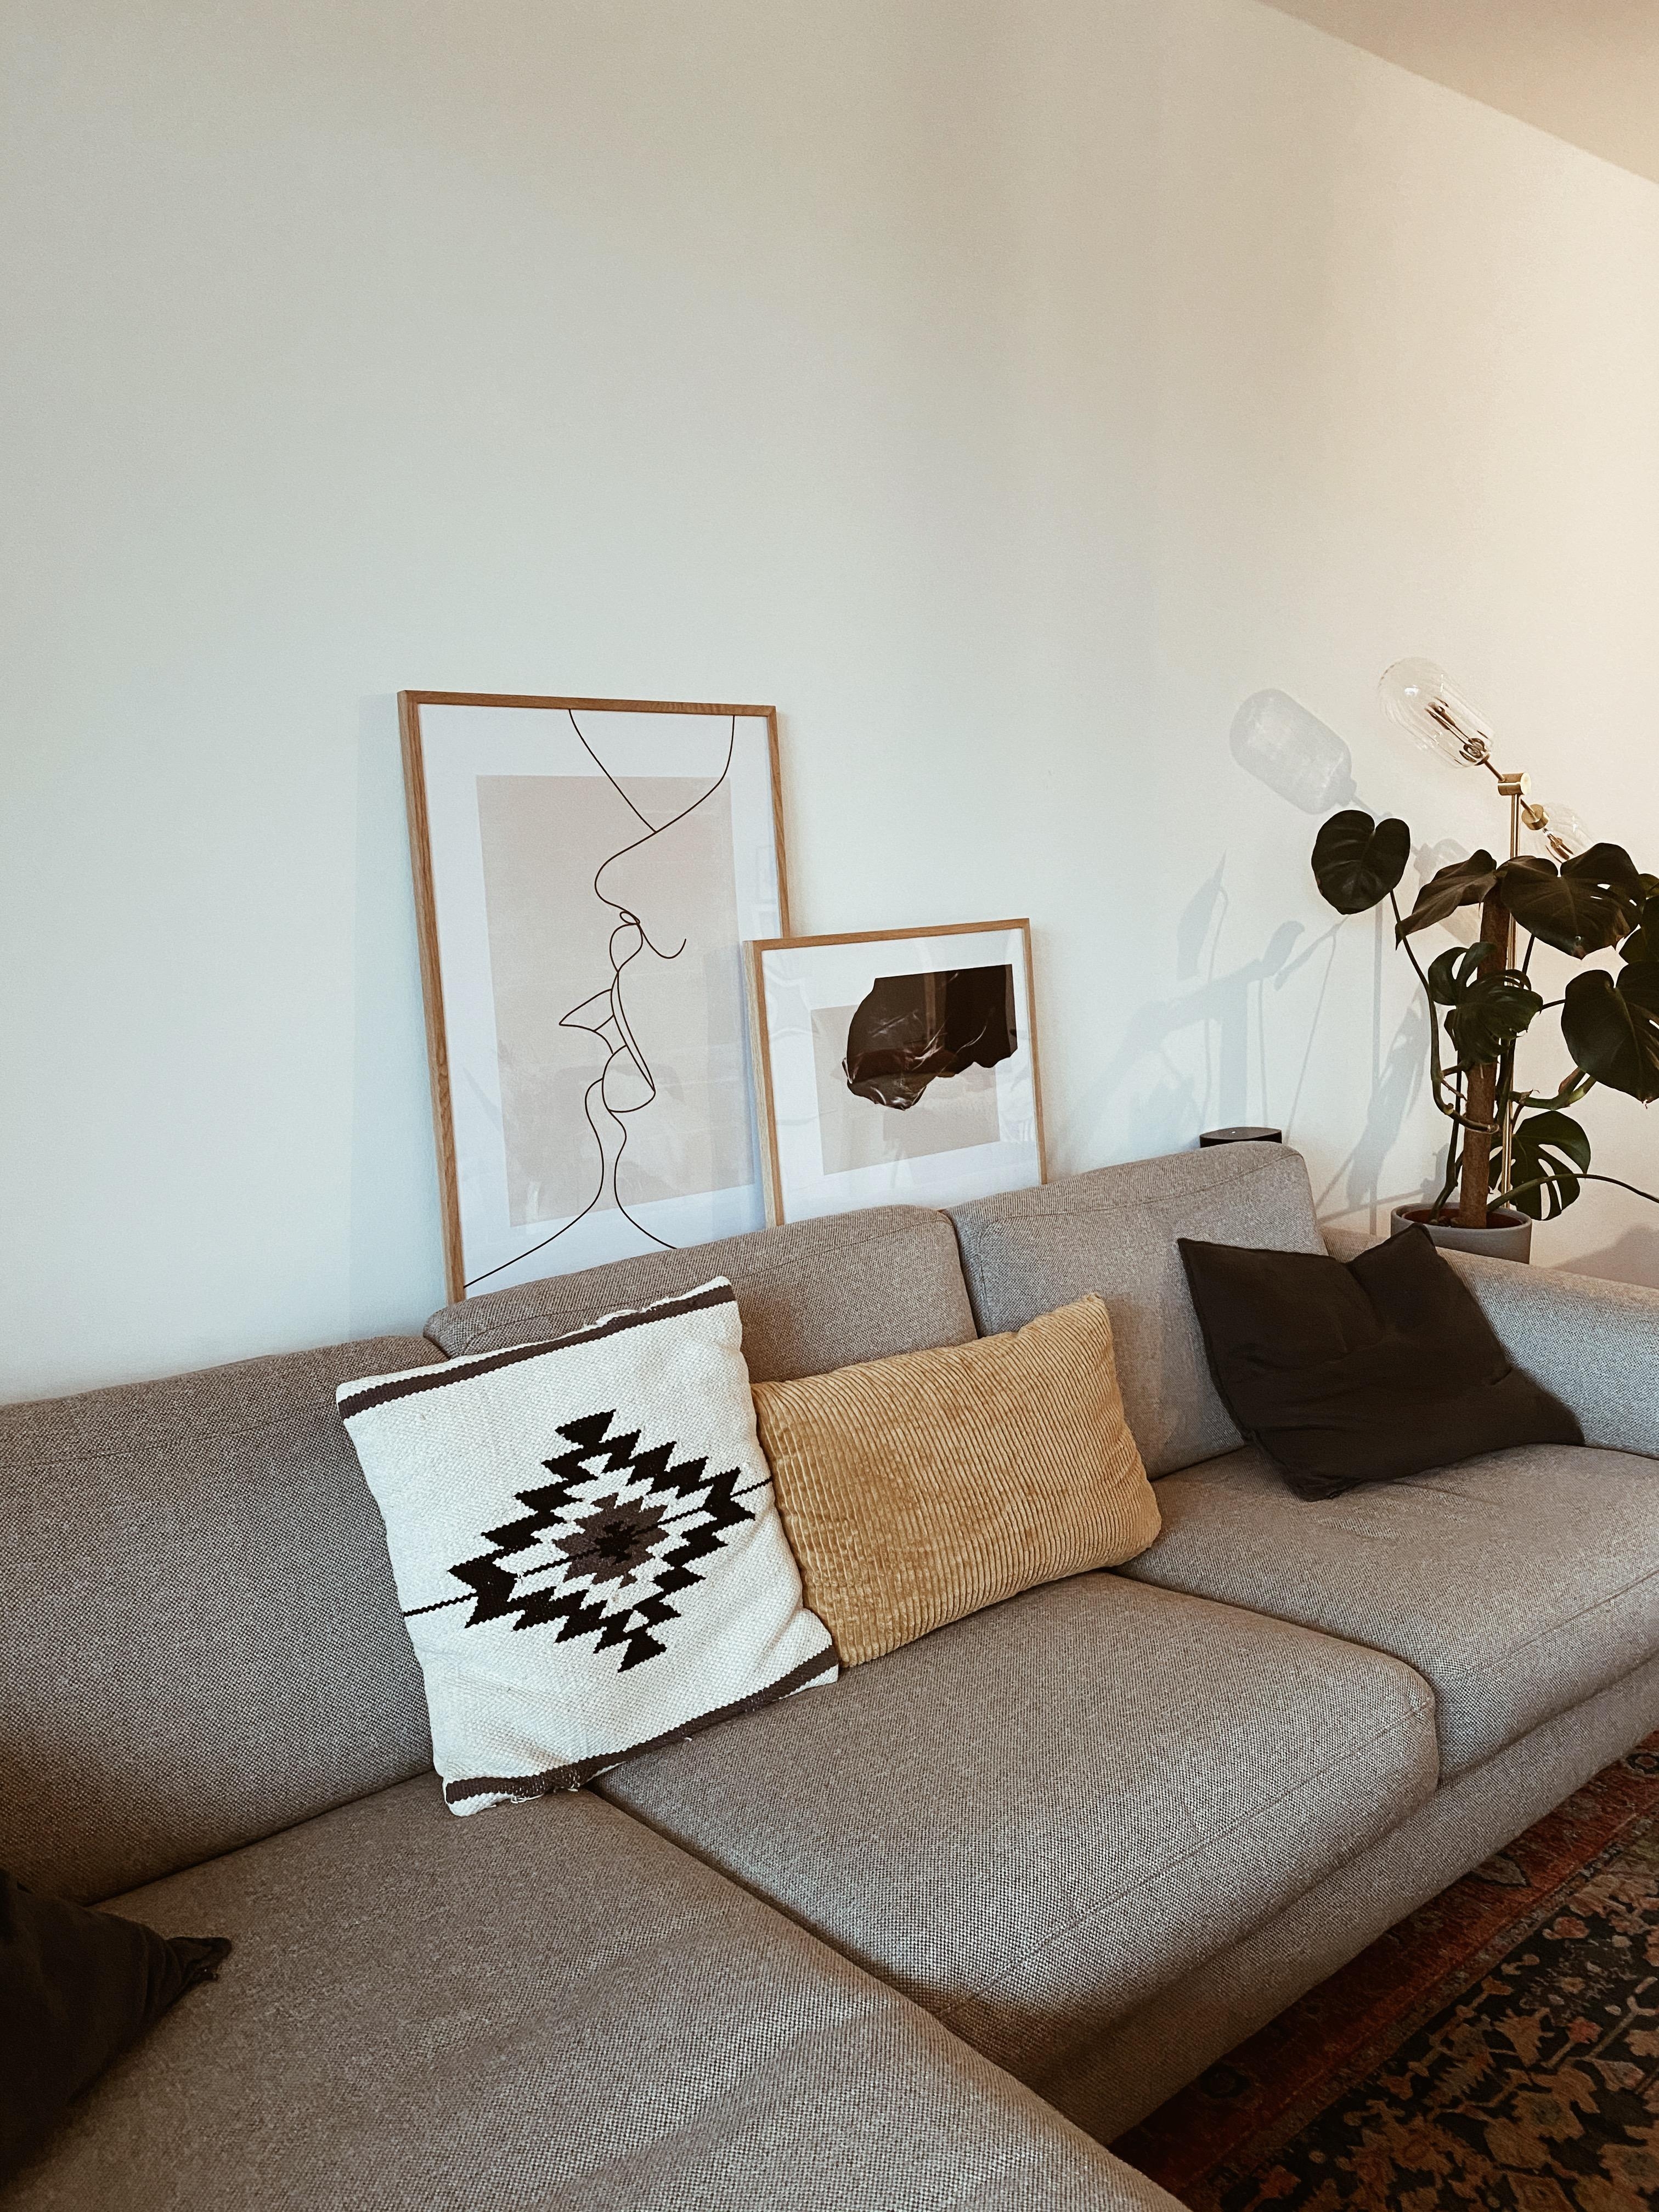 Place to be für heute ❤️
#sofa #wanddeko #Wohnzimmer #livingroom #interior #deko 